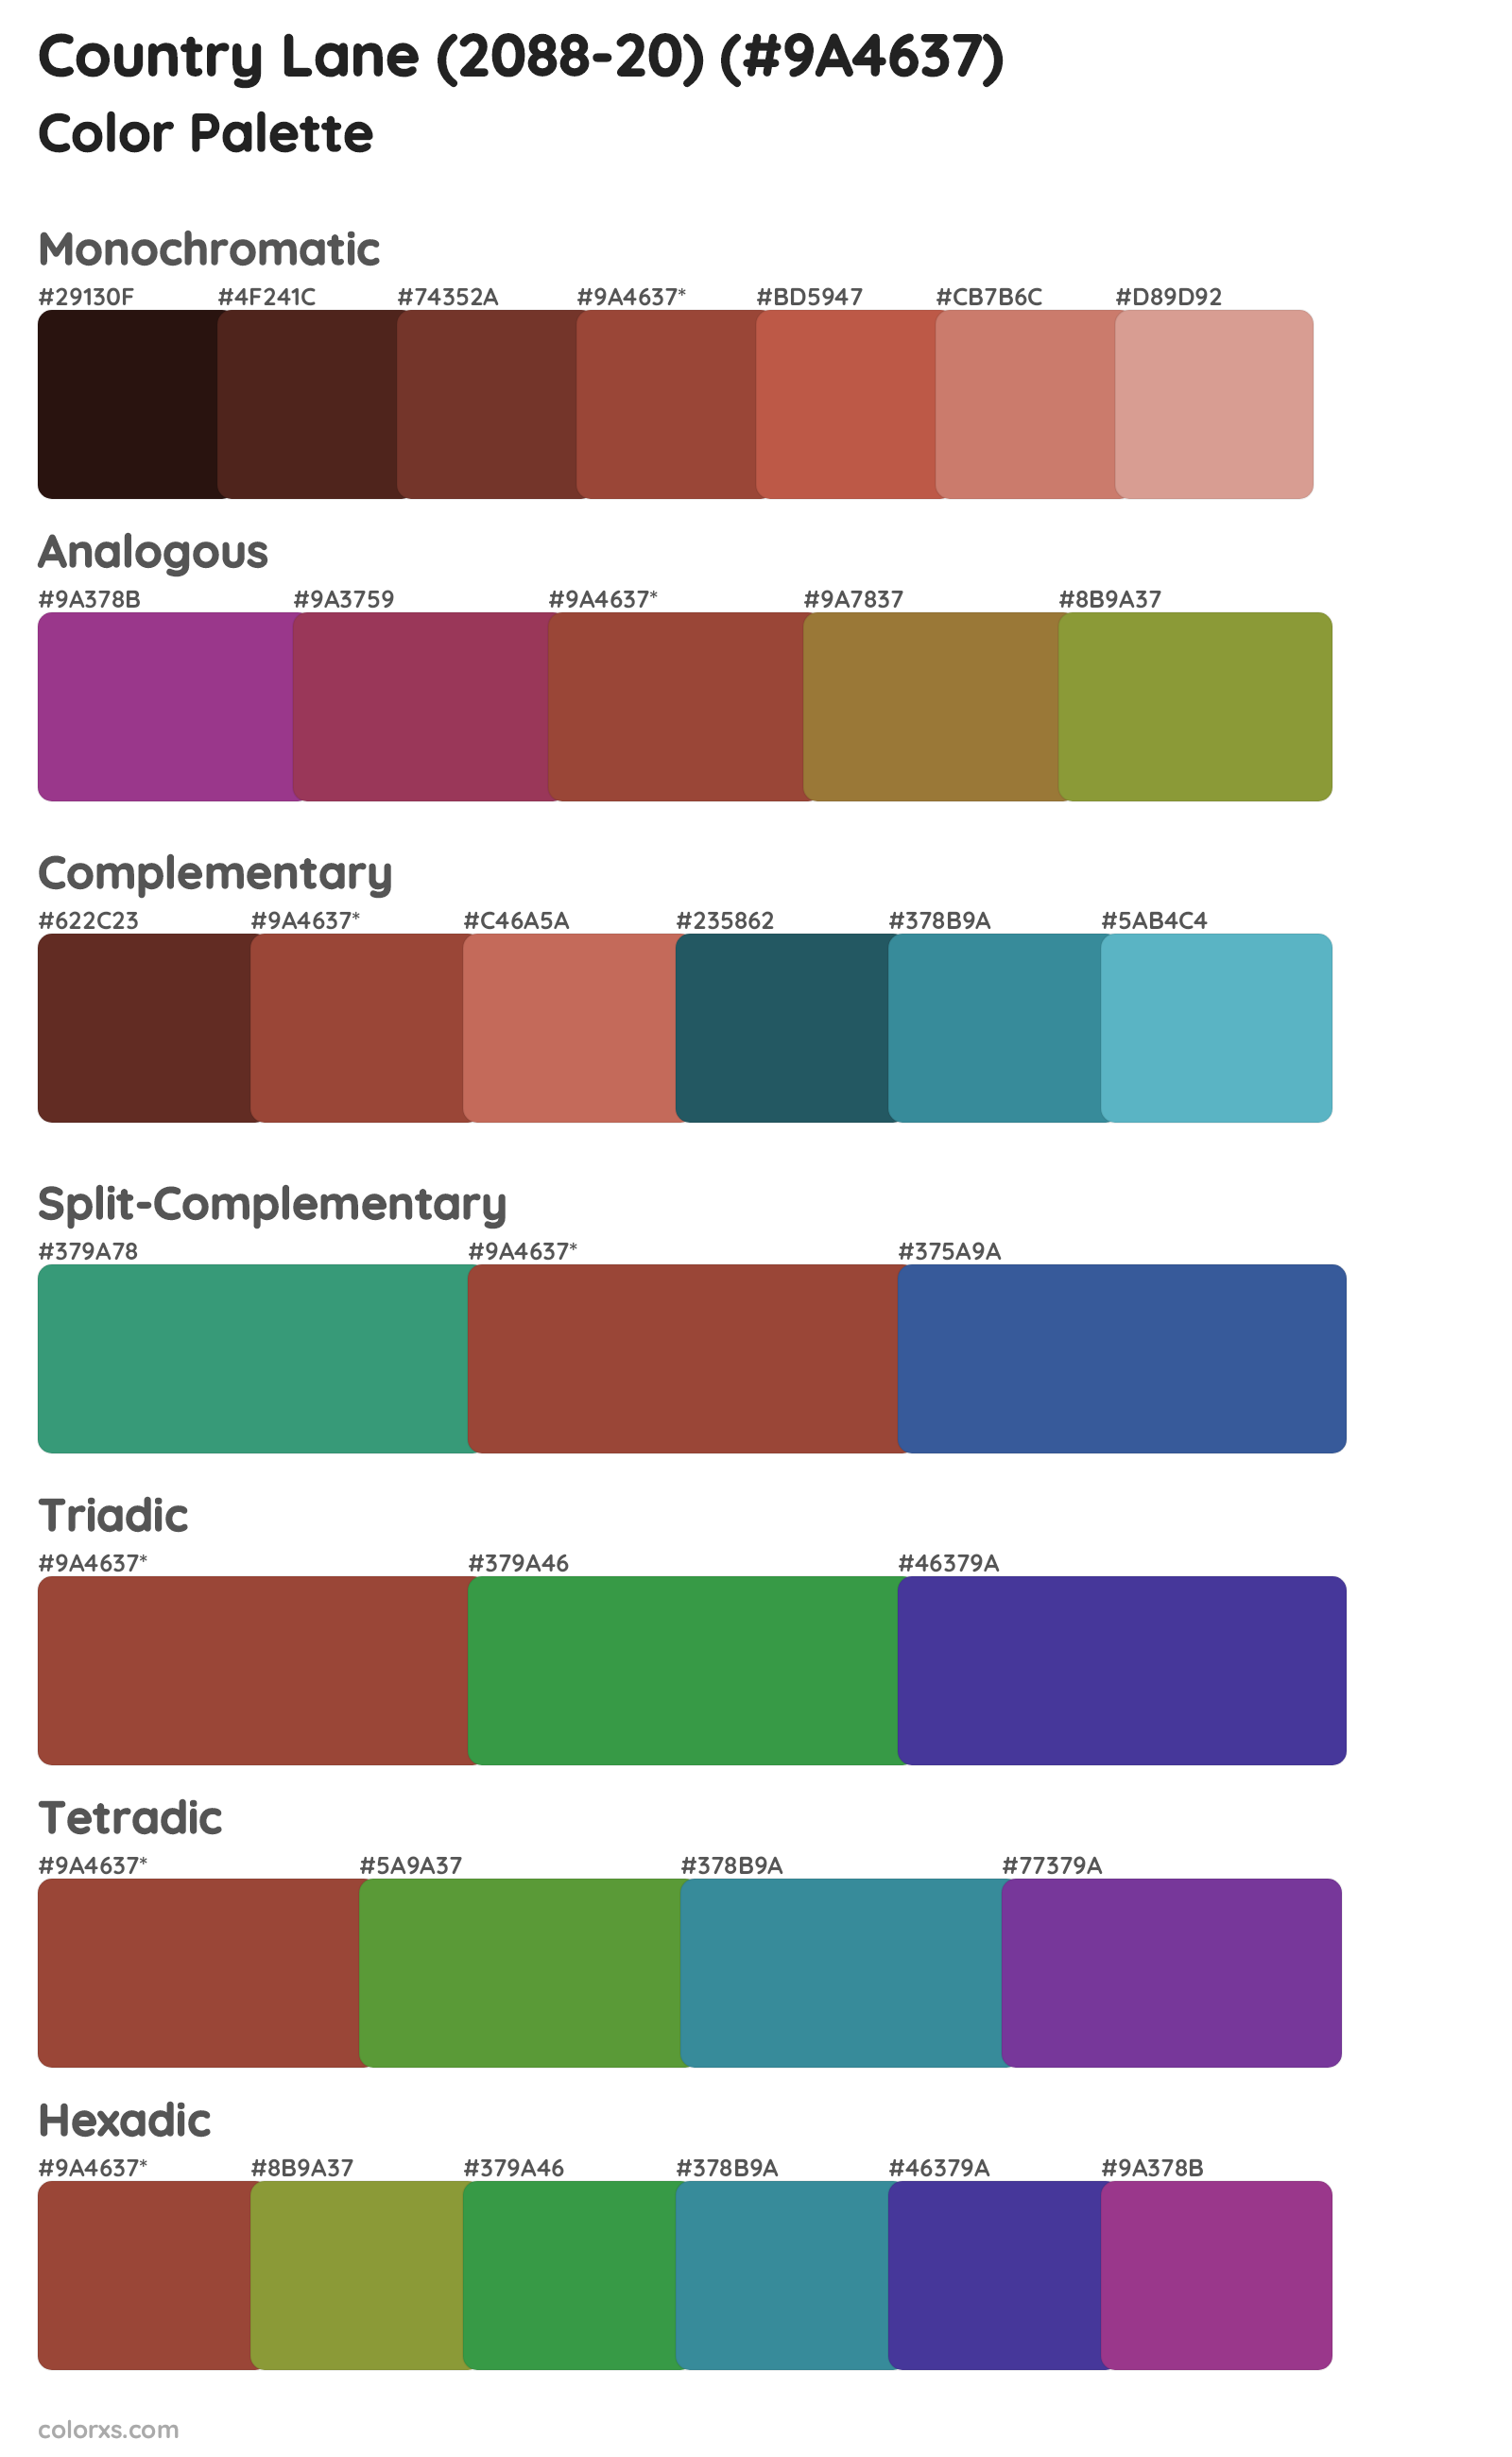 Country Lane (2088-20) Color Scheme Palettes